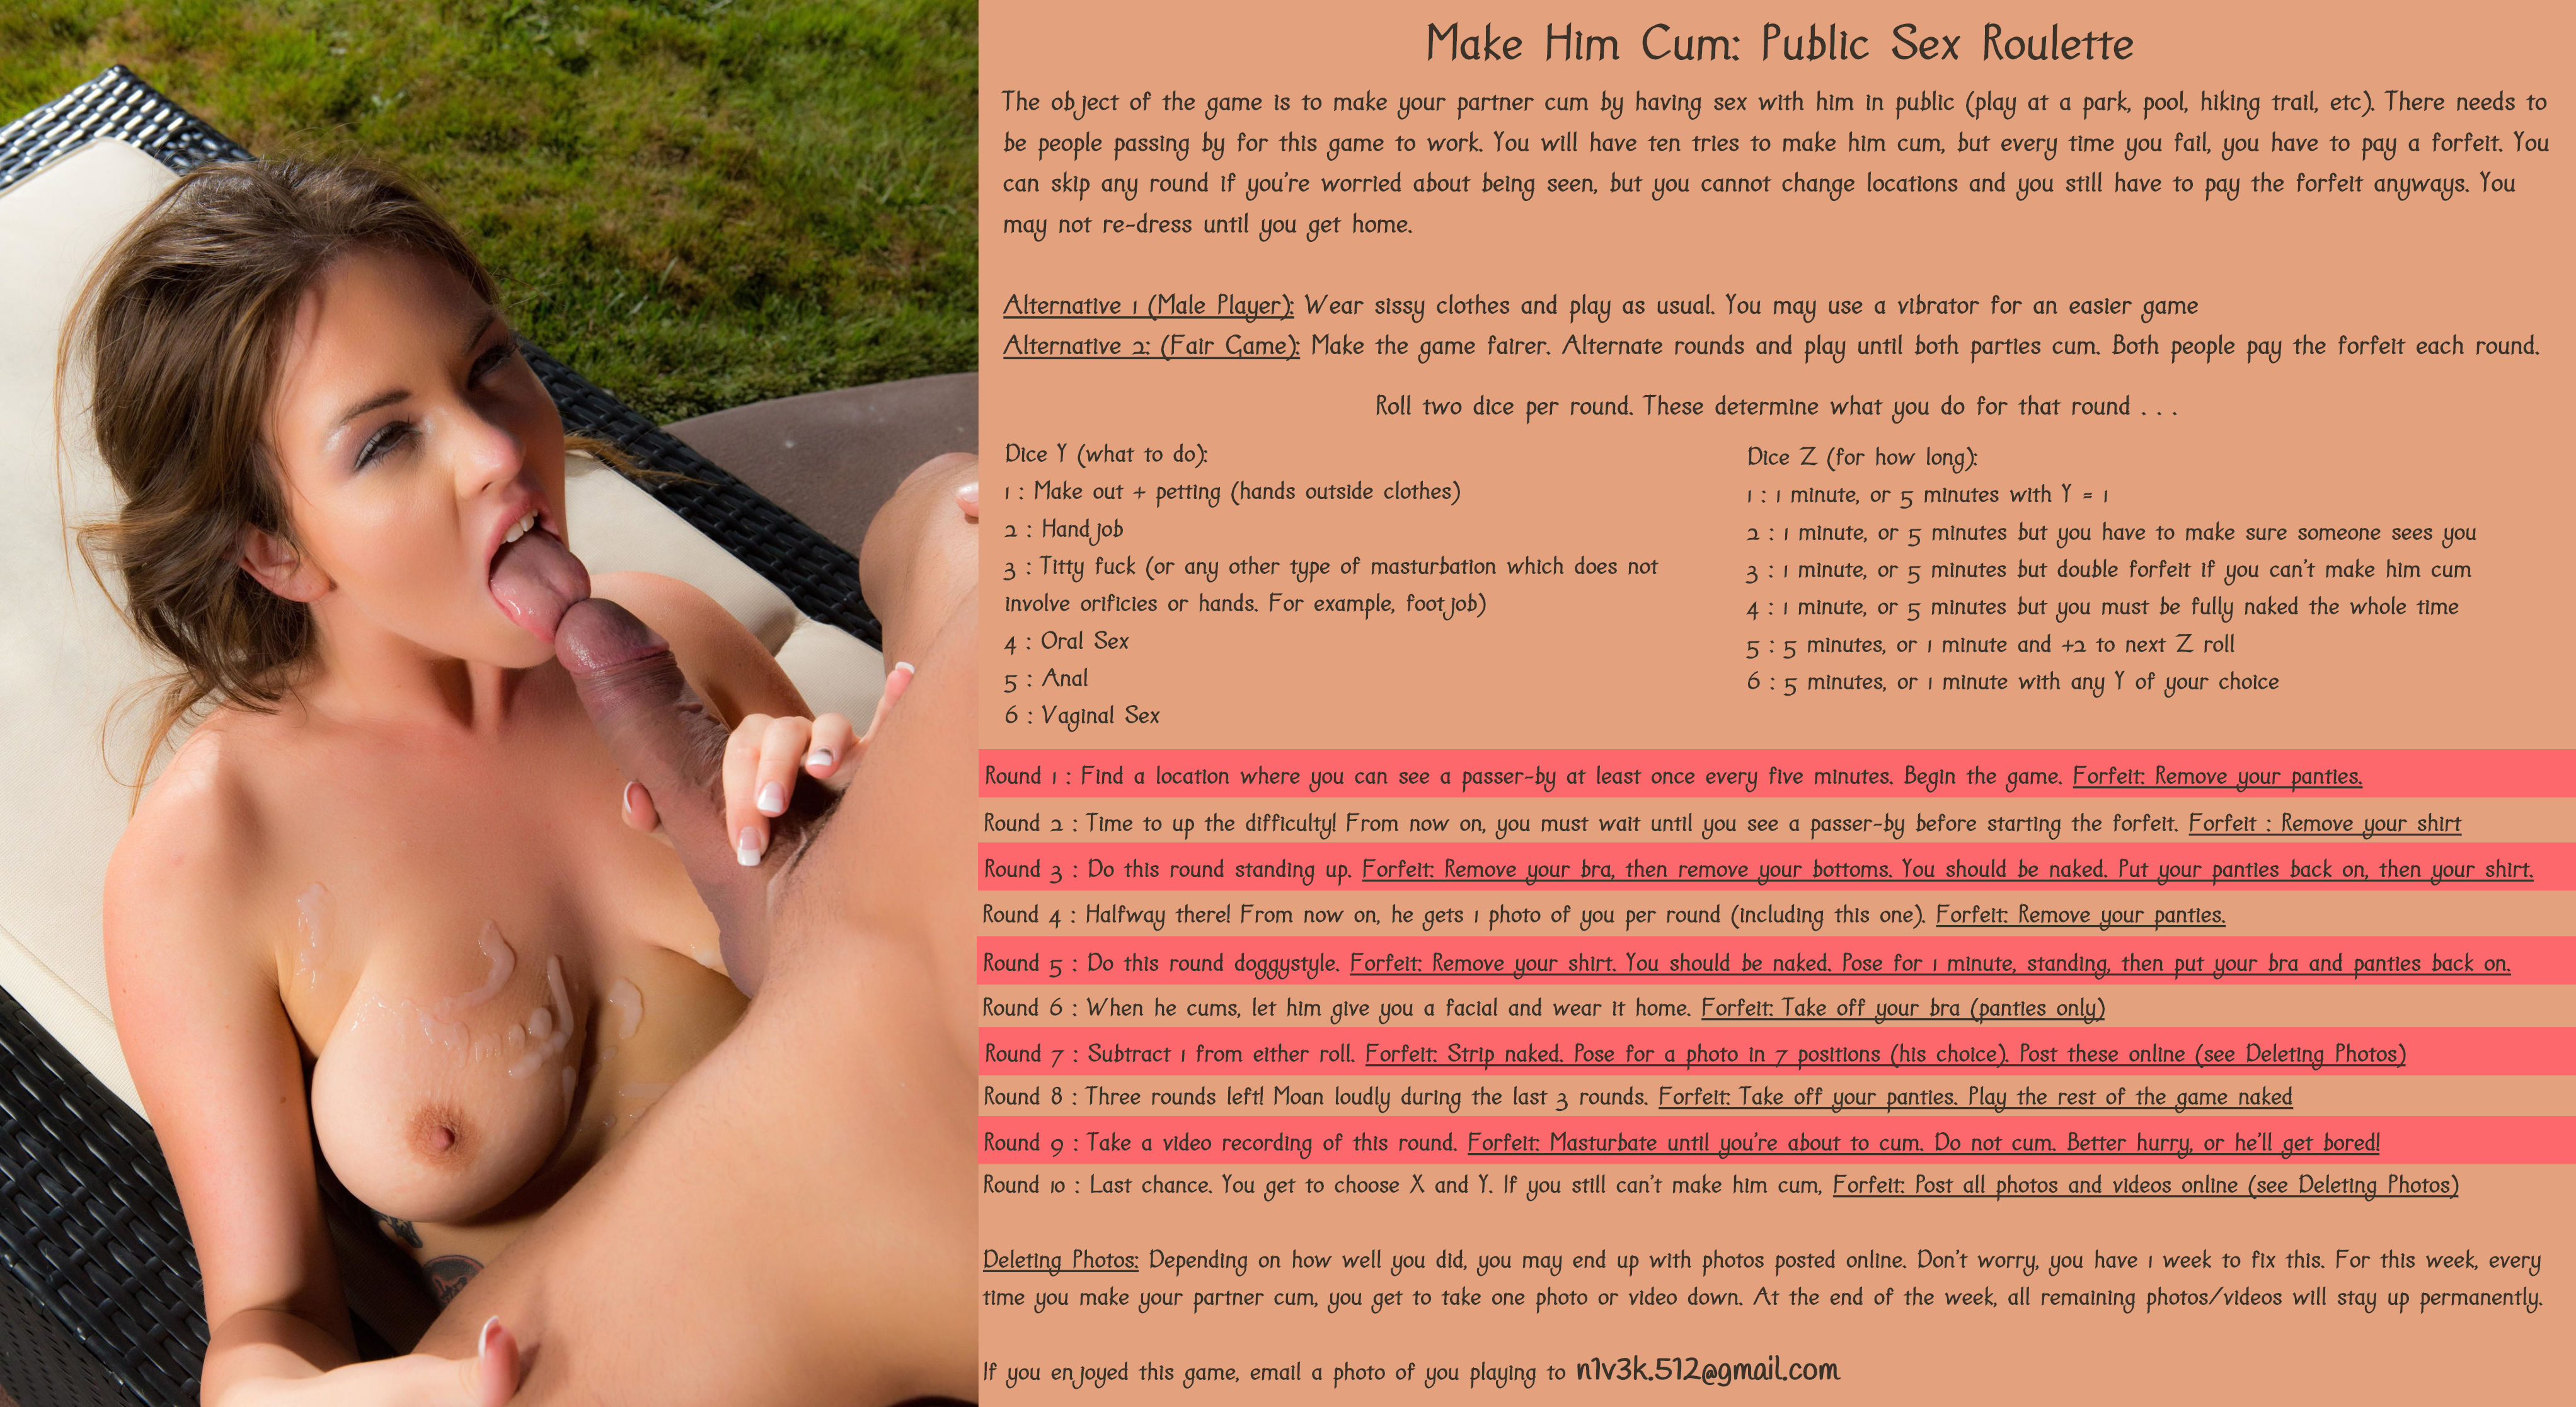 Make Him Cum: Public Sex Roulette - Fap Roulette. 